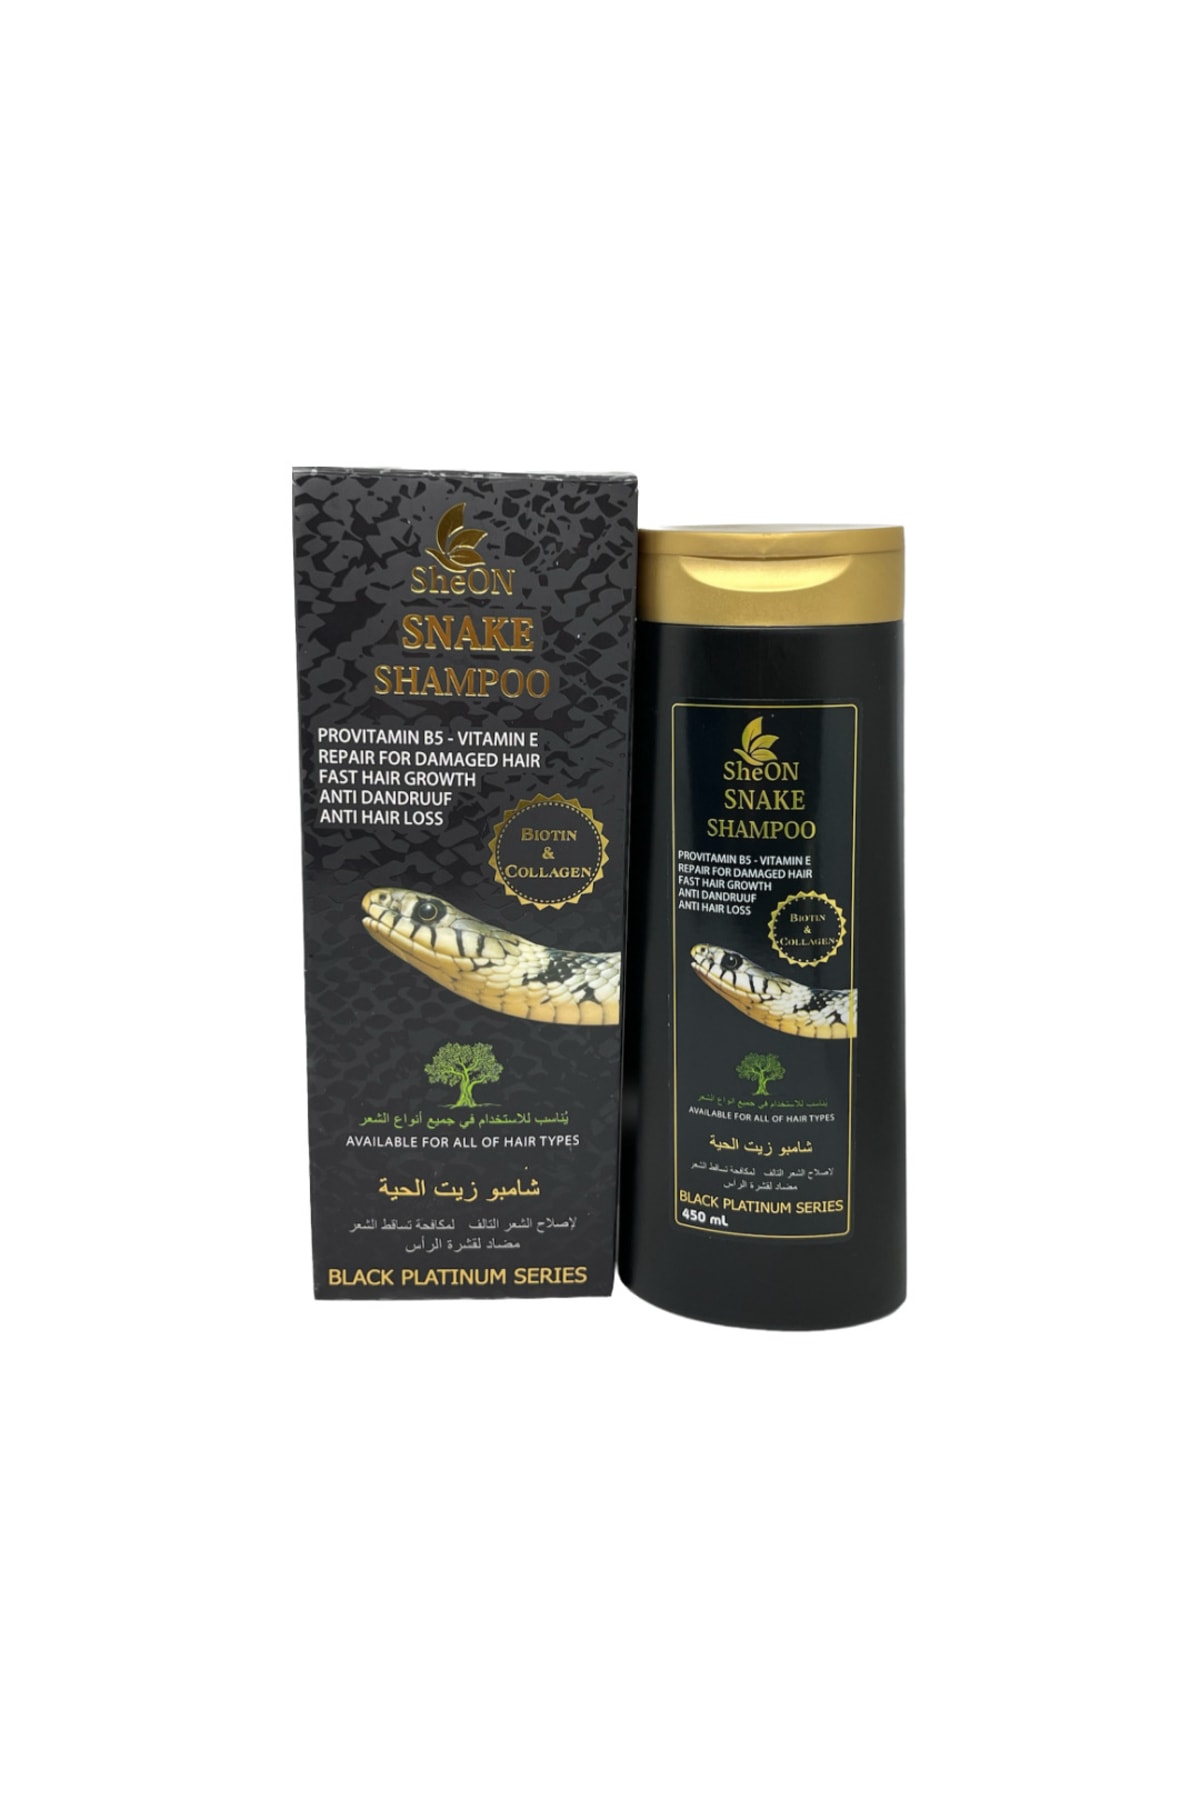 SheON Snake Oil Shampoo Yılan Yağı Şampuanı Biotin Ve Collegen Şampuanı